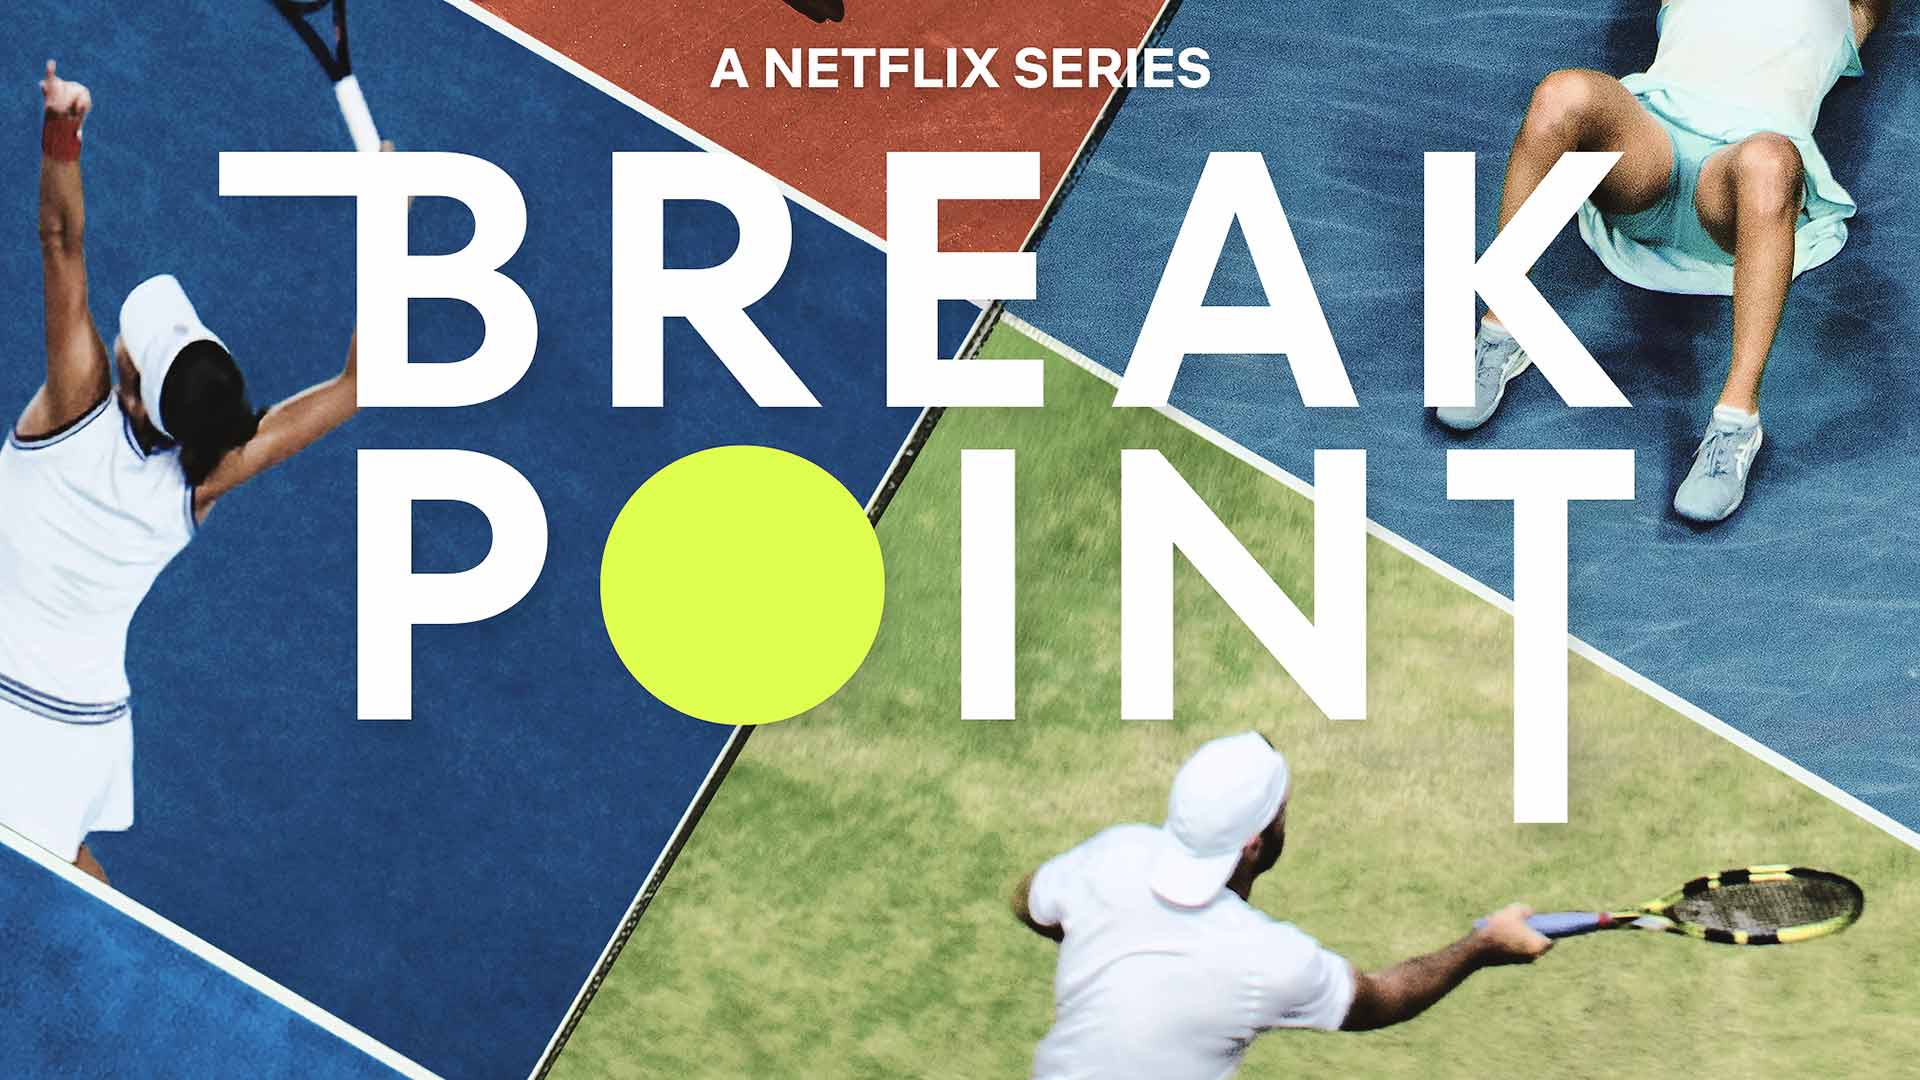 Break Point release date: When the Netflix tennis documentary is